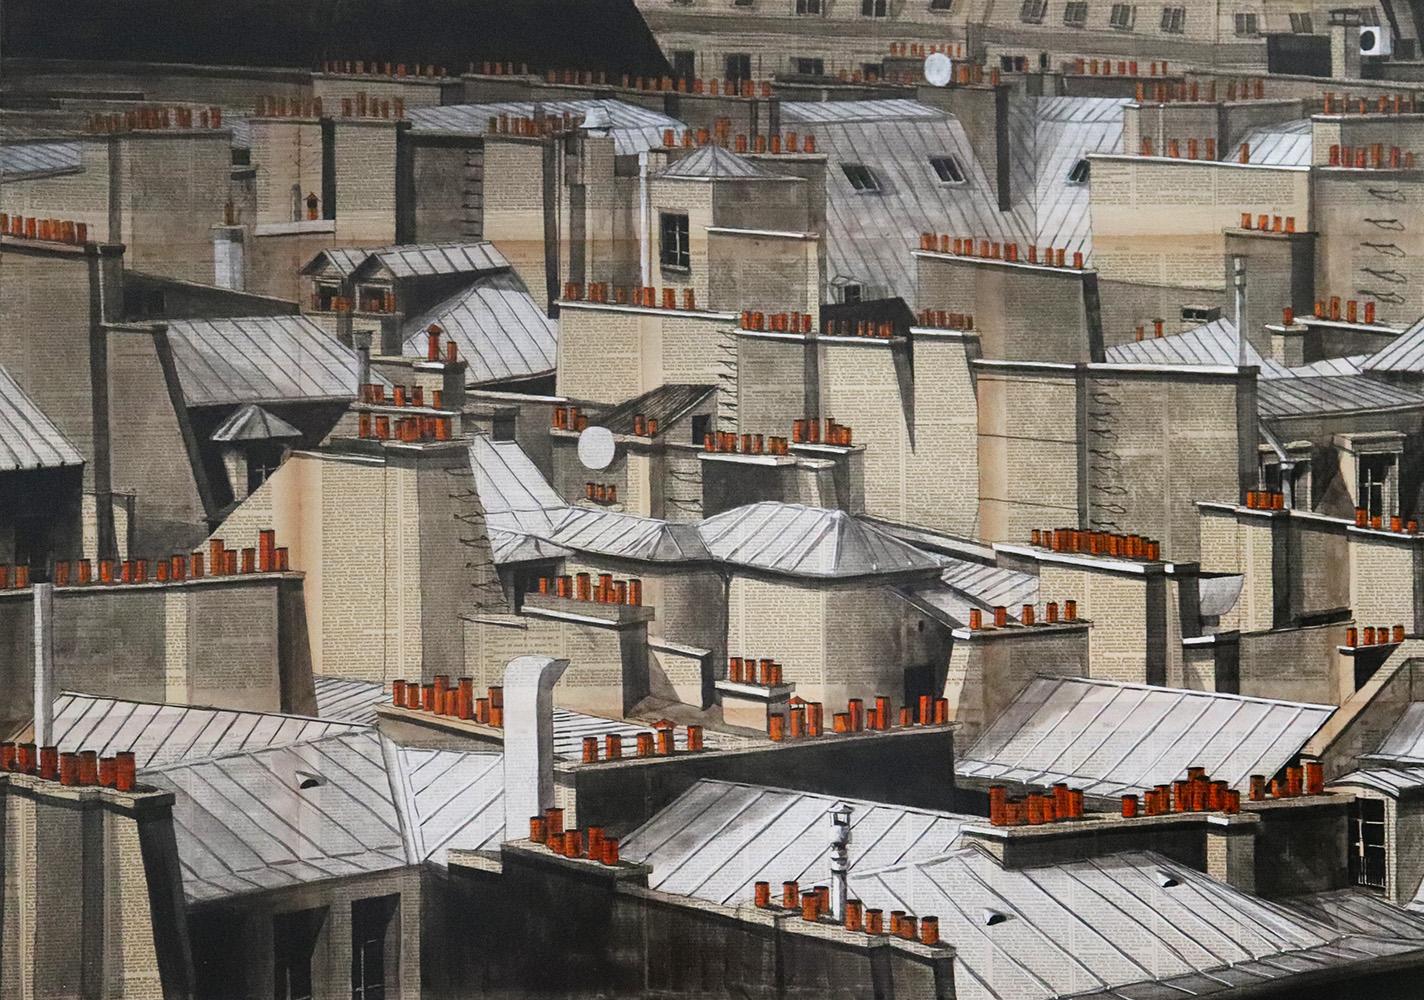 Paris Rooftops II by Guillaume Chansarel - Urban Landscape painting, Paris